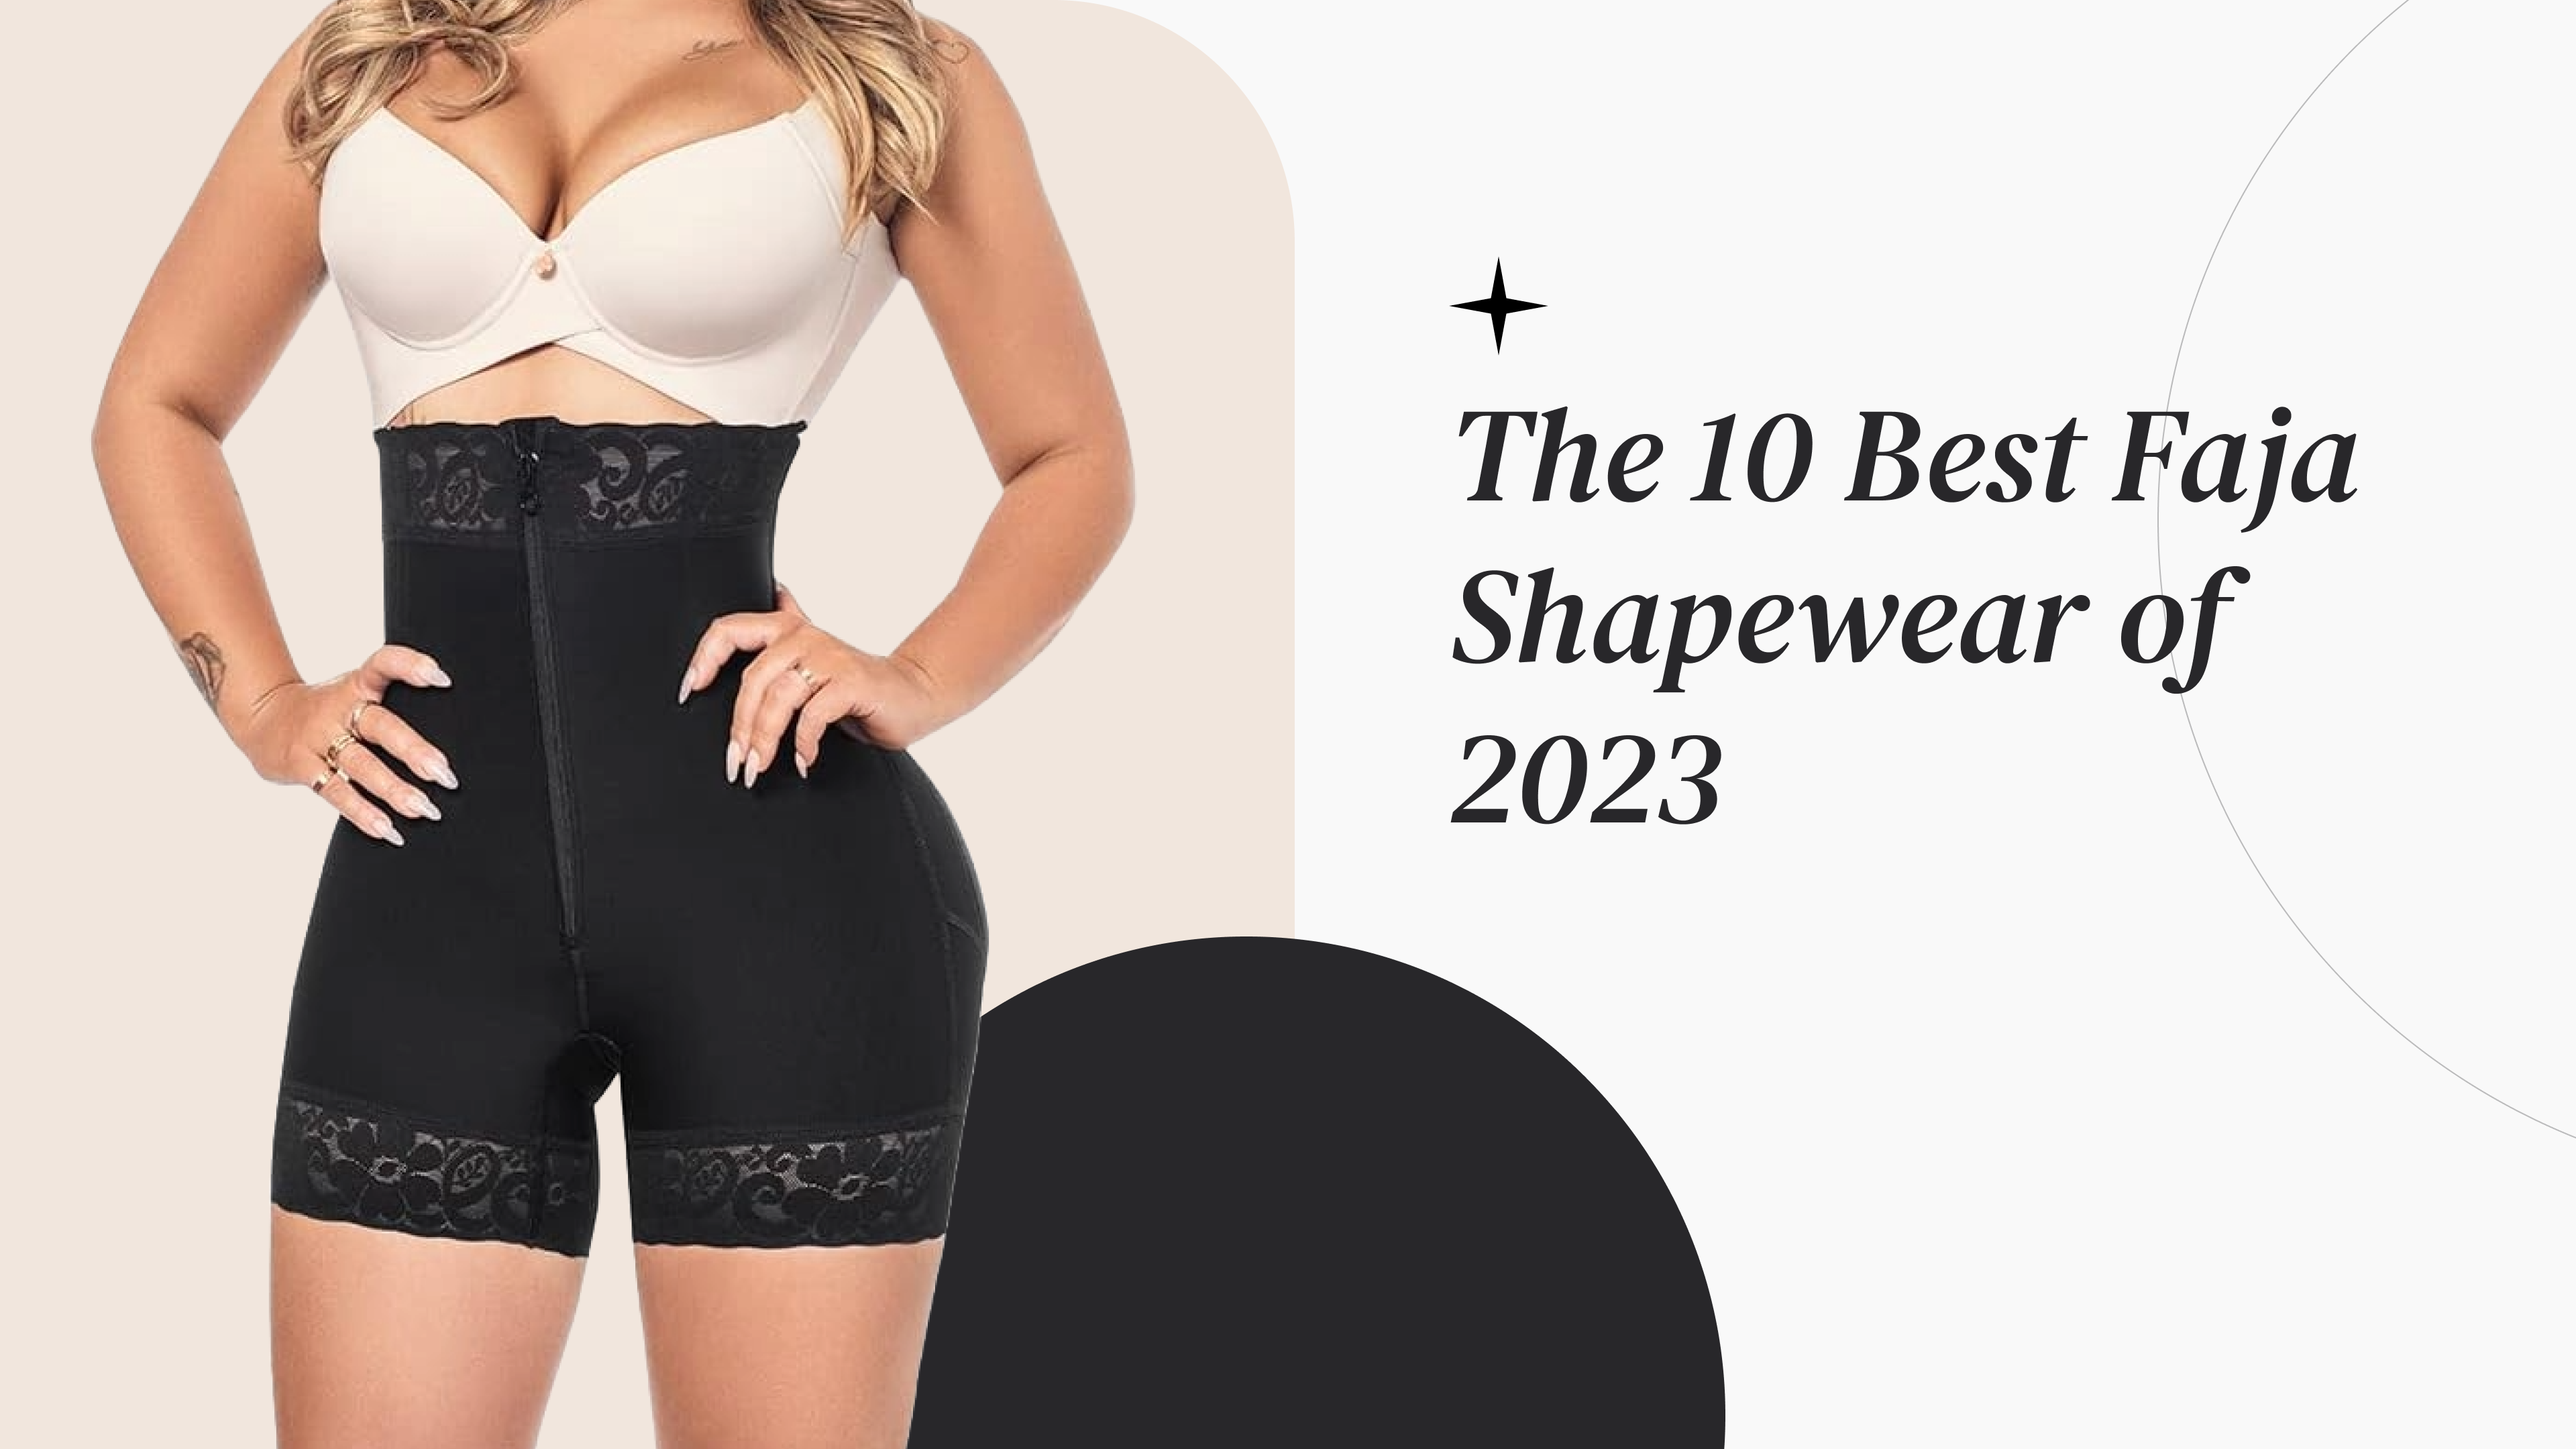 The 10 Best Faja Shapewear of 2023